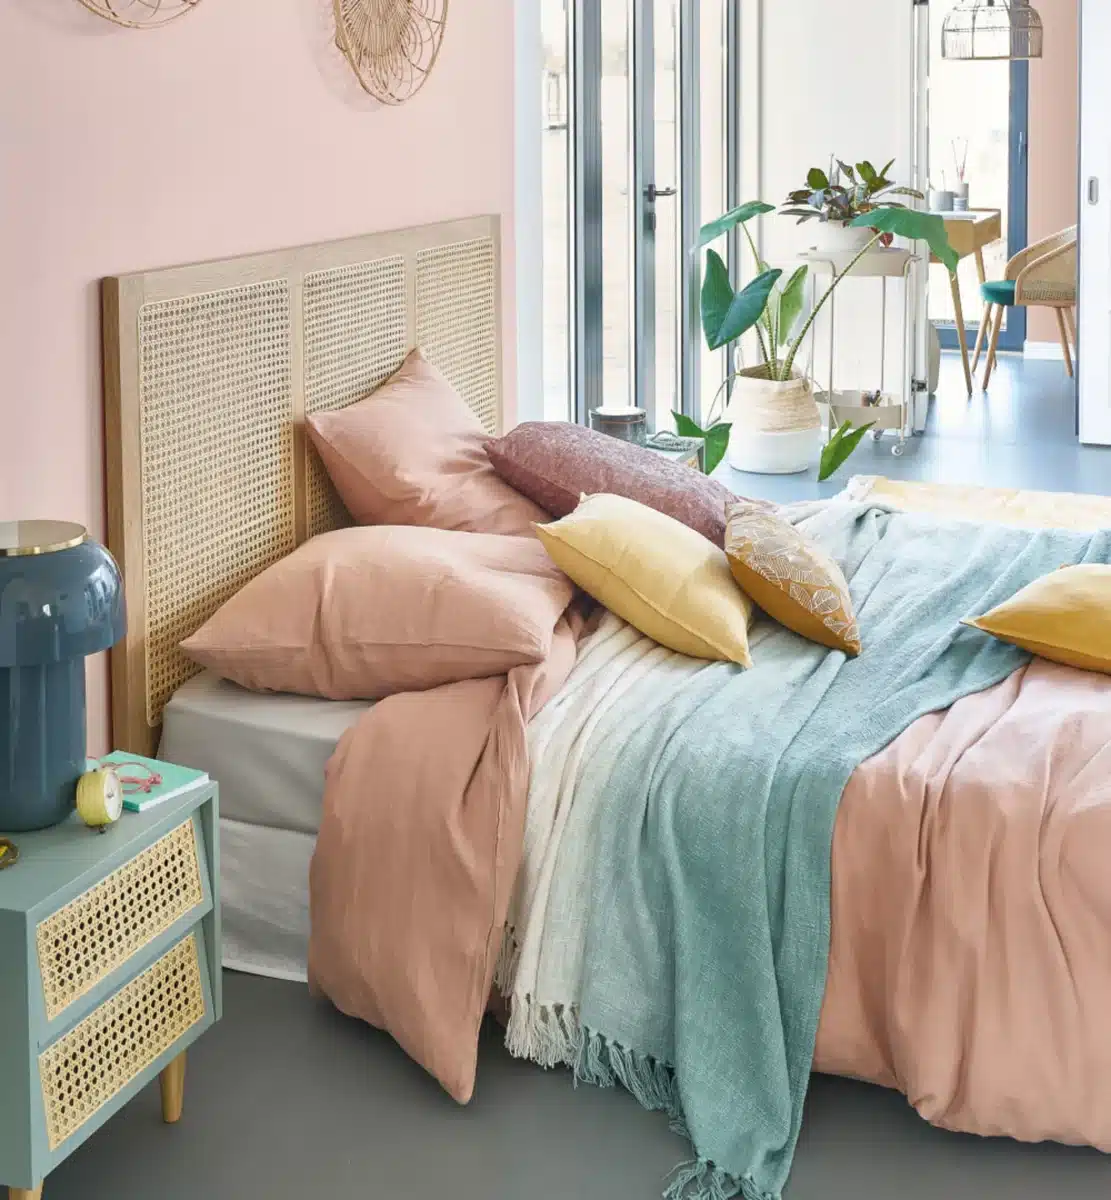 Une chambre au couleur pastel avec une tête de lit design en cannage et bois clair